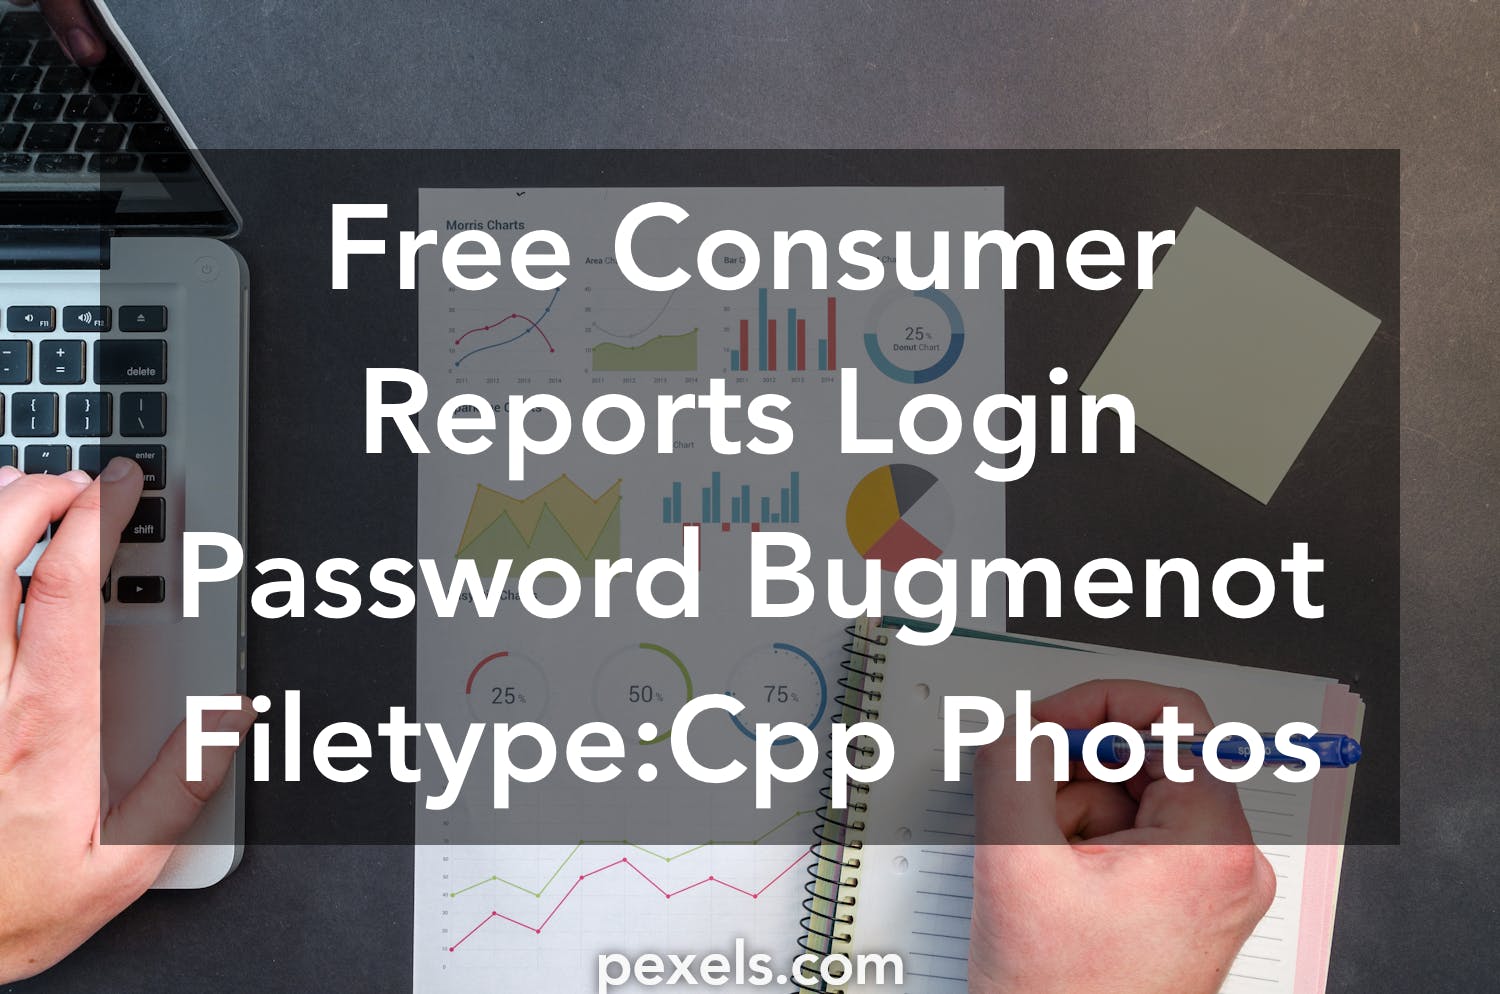 Instagram Bugmenot Bugmenot Videos You2repeat - roblox password hack bugmenot